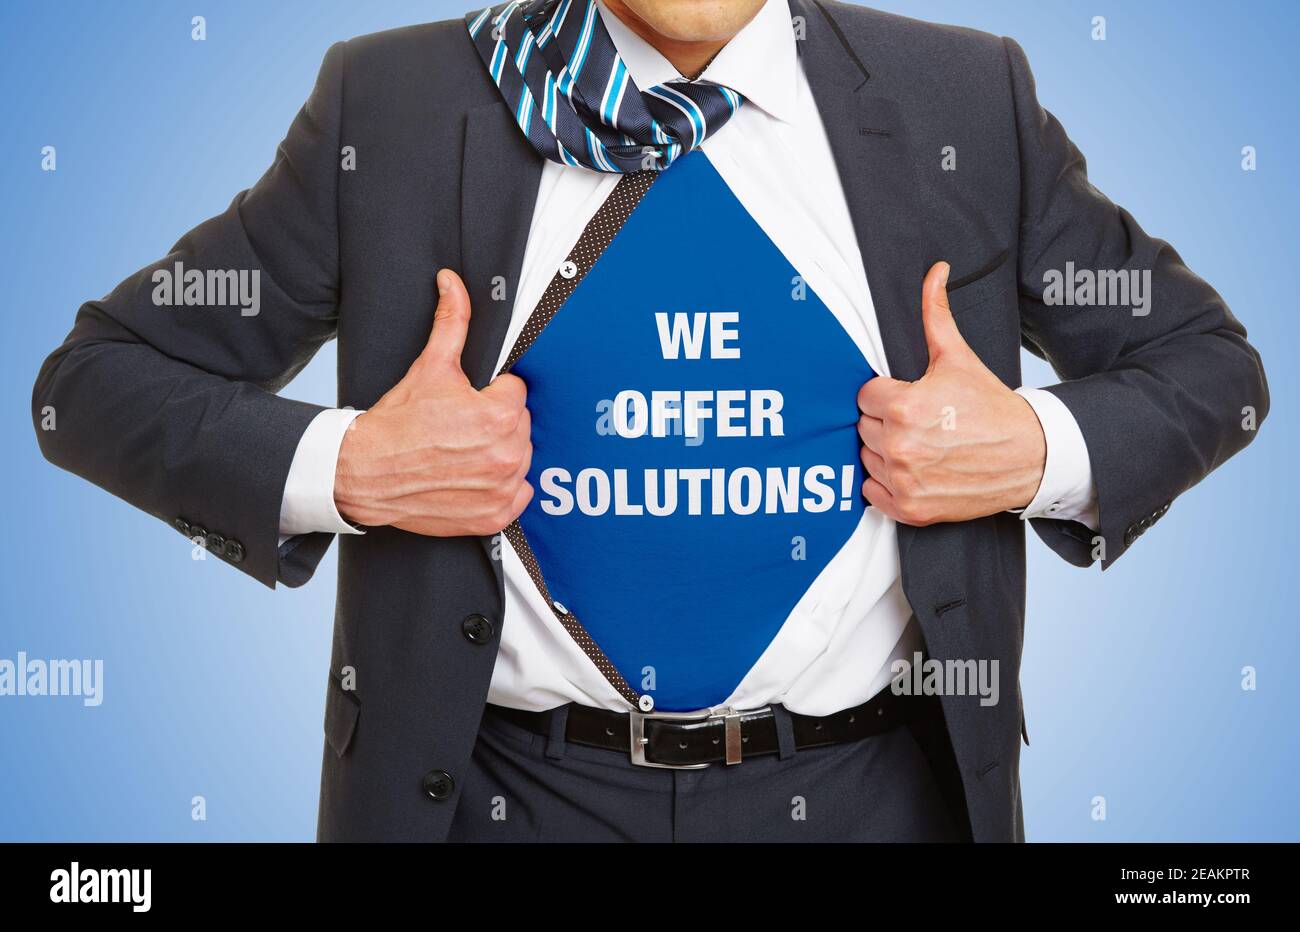 Mann im Anzug öffnet sein Hemd und trägt den Slogan Wir bieten Lösungen! Inklusive als Konzept Stockfoto